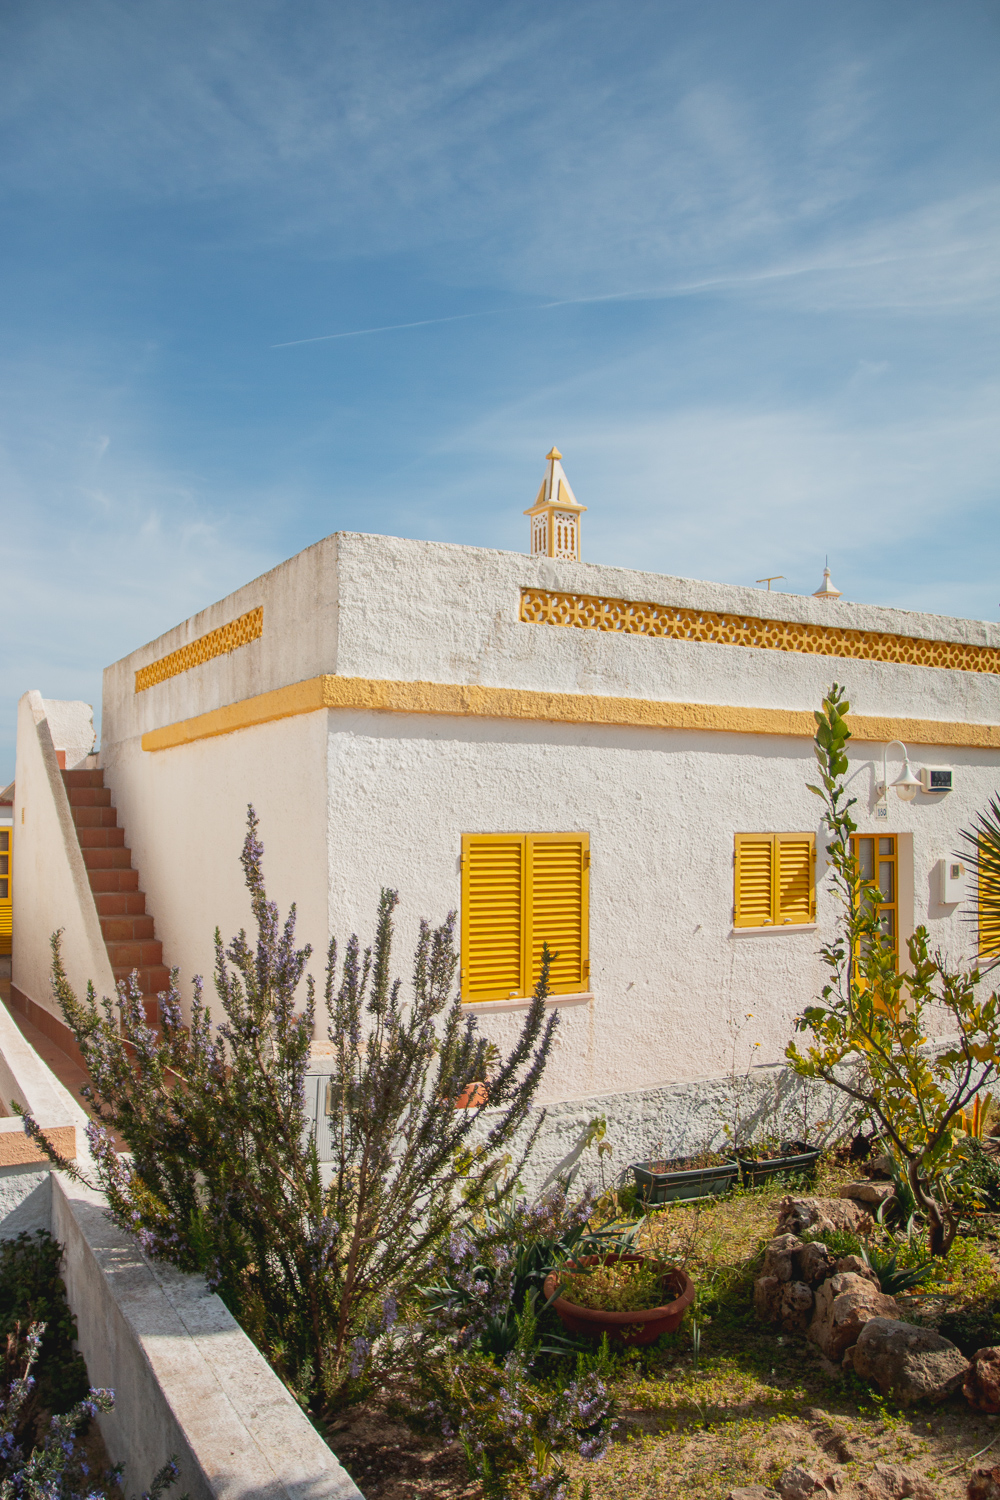 Holiday Homes in Farol on Ilha da Culatra, The Algarve, Portugal